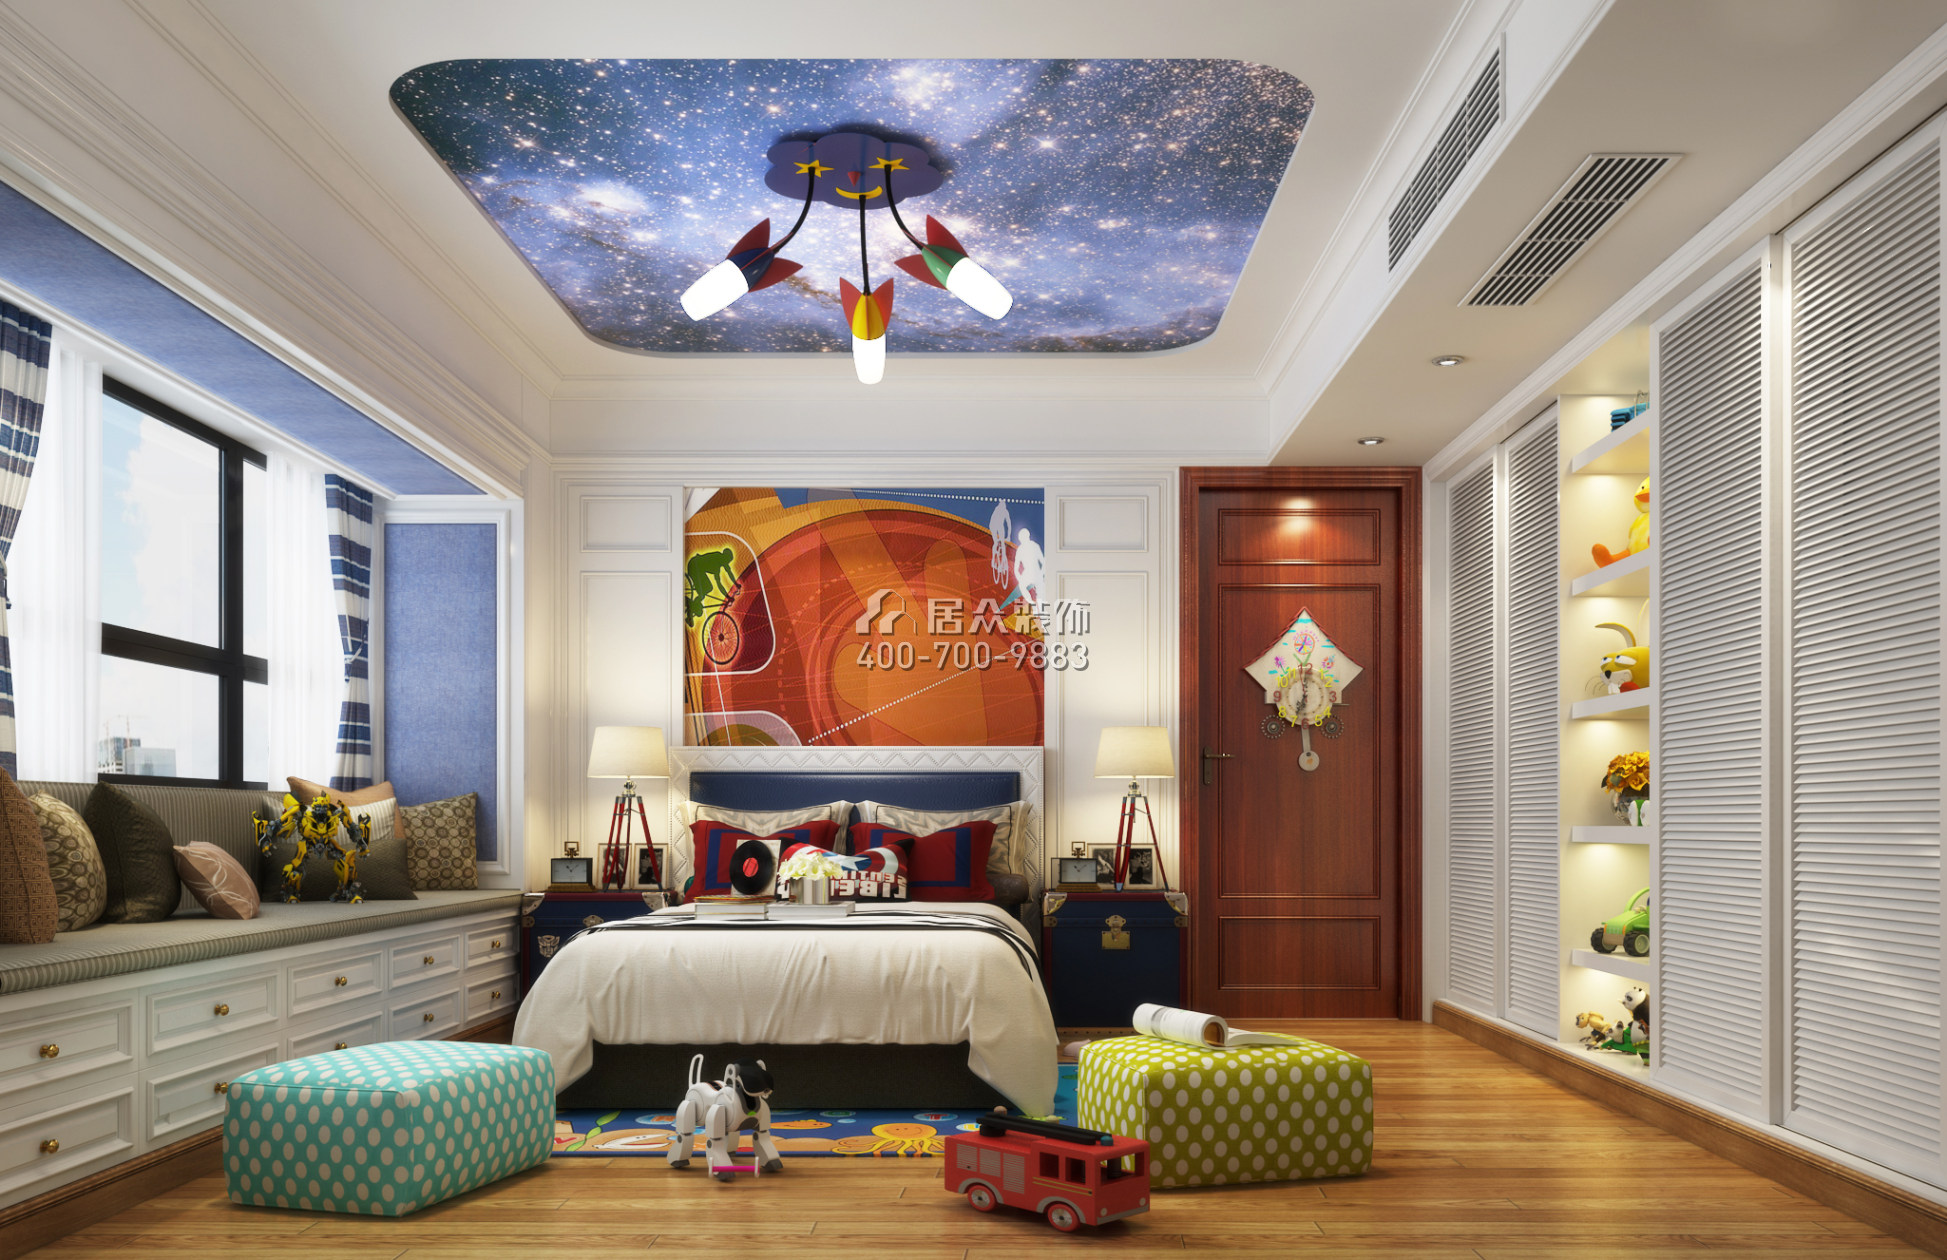 幸福世家270平方米中式风格复式户型卧室装修效果图